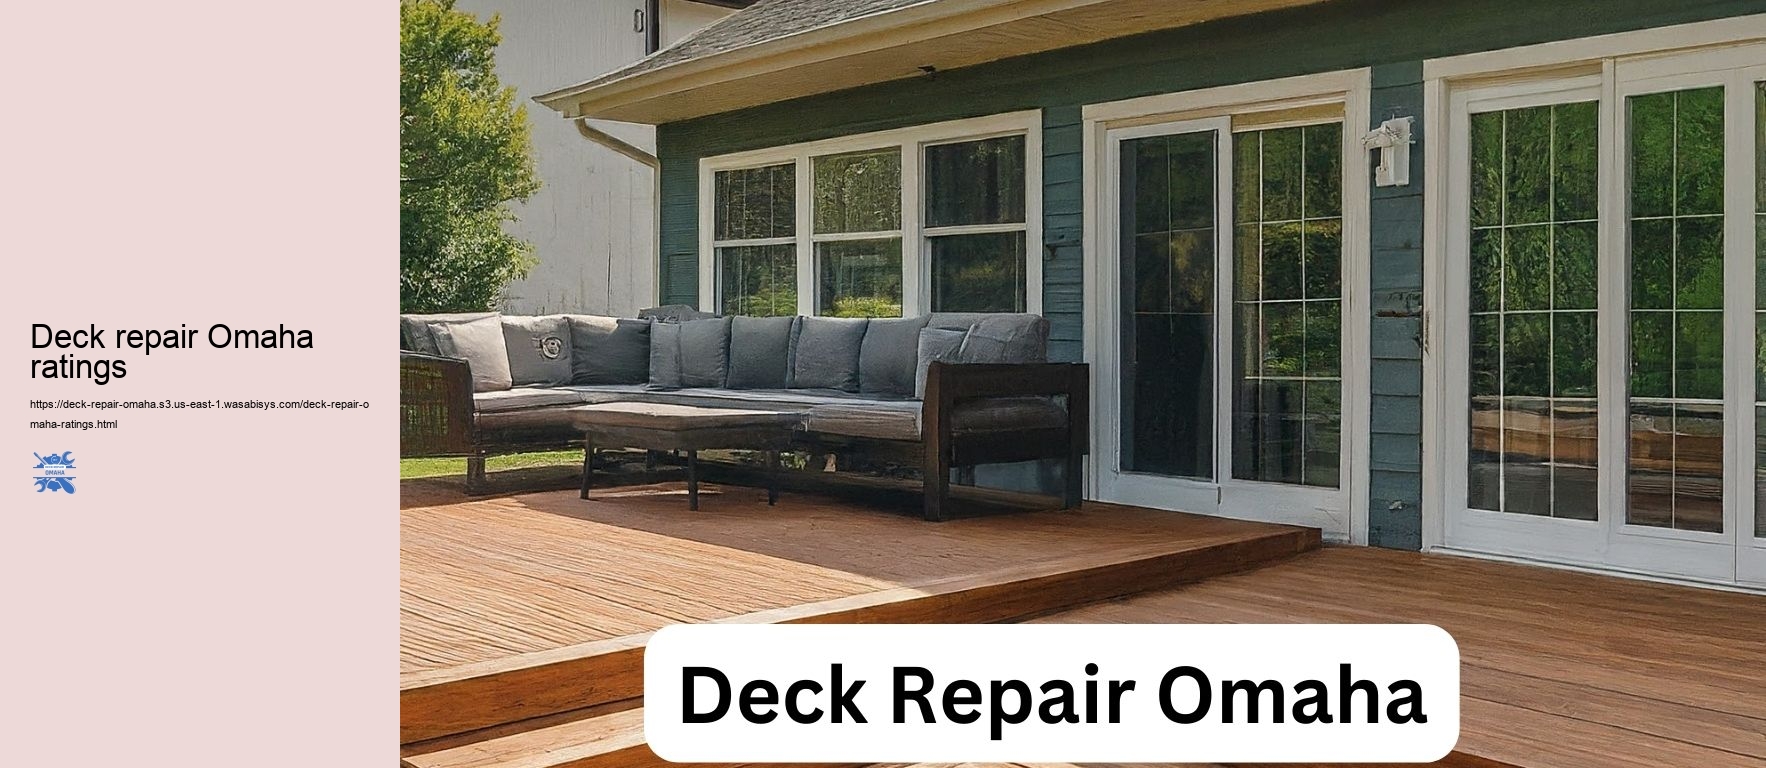 Deck repair Omaha ratings